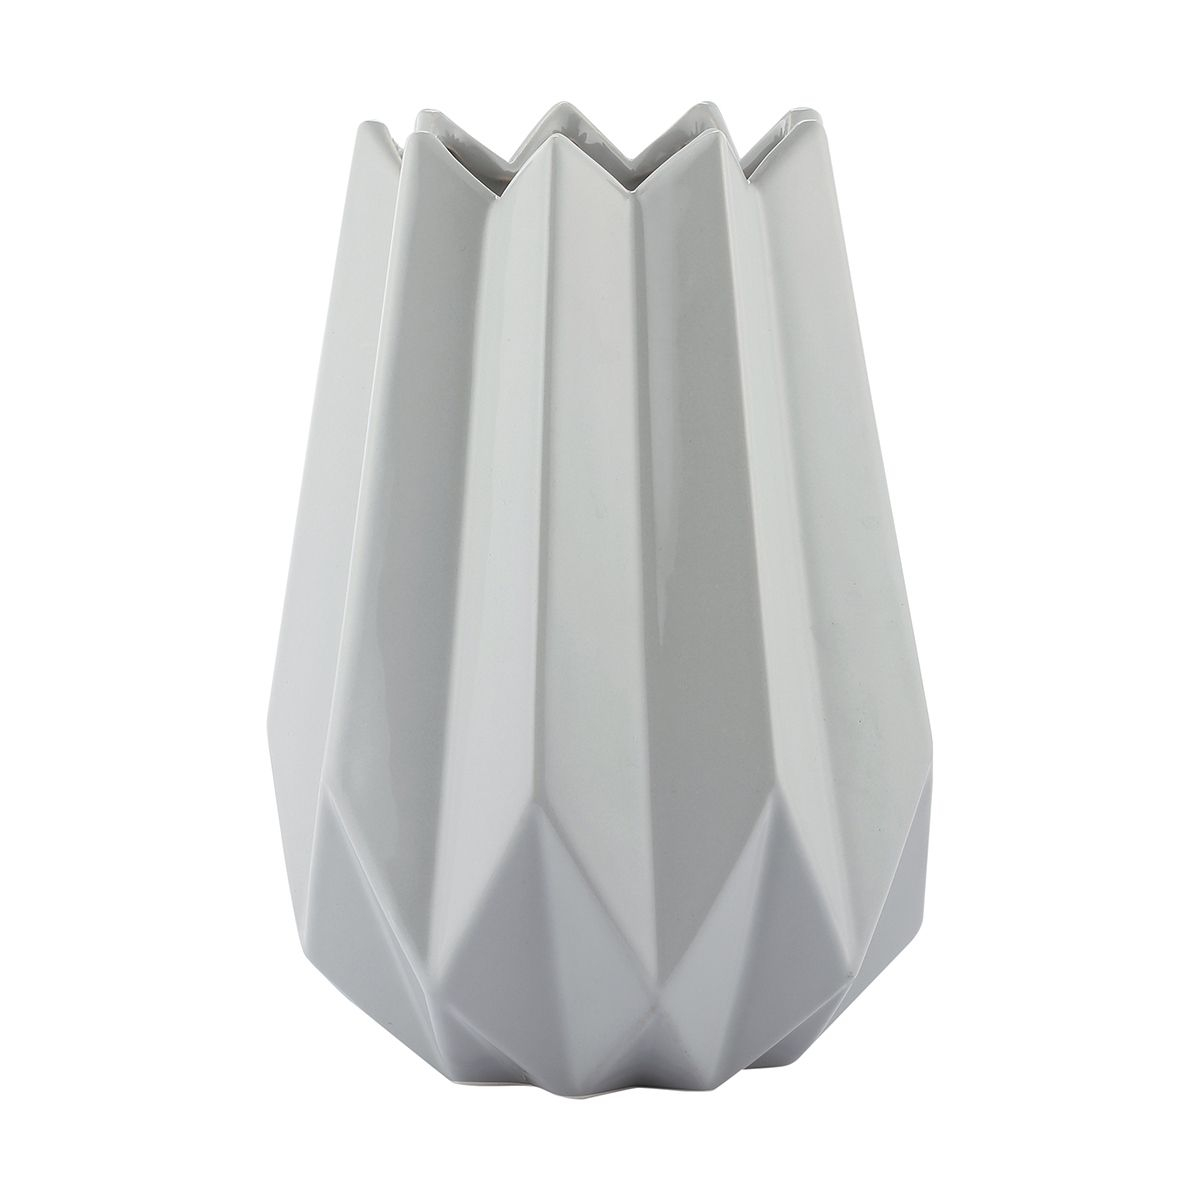 Ribbed Grey Vase Kmart Grey Vases Vase Laundry Decor pertaining to sizing 1200 X 1200